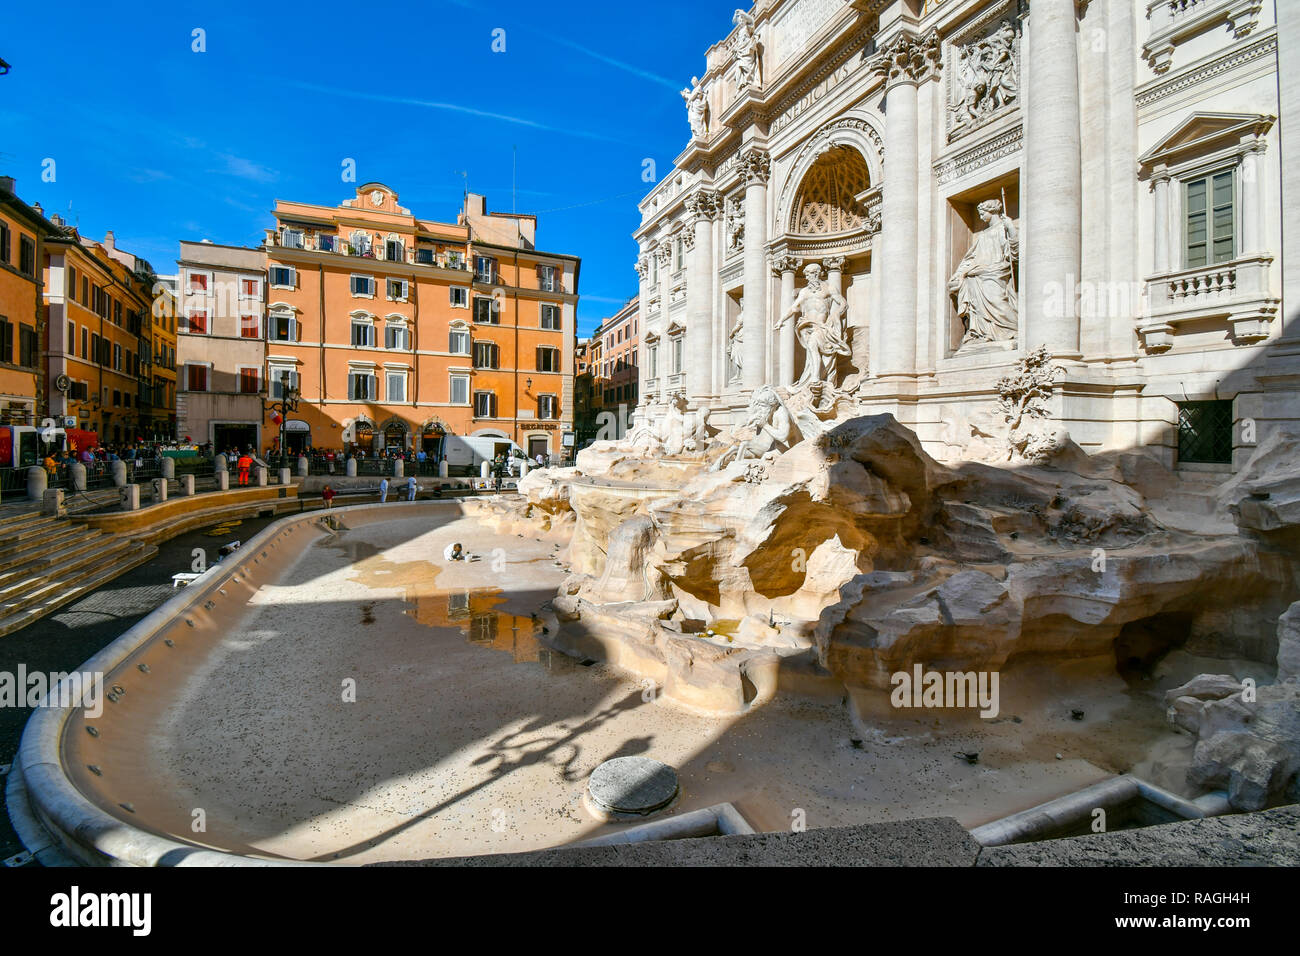 Kunsthistorikerin reinigt und pflegt die Leer, ausgelaugt Trevi Brunnen an einem sonnigen Nachmittag im frühen Herbst in Rom, Italien Stockfoto